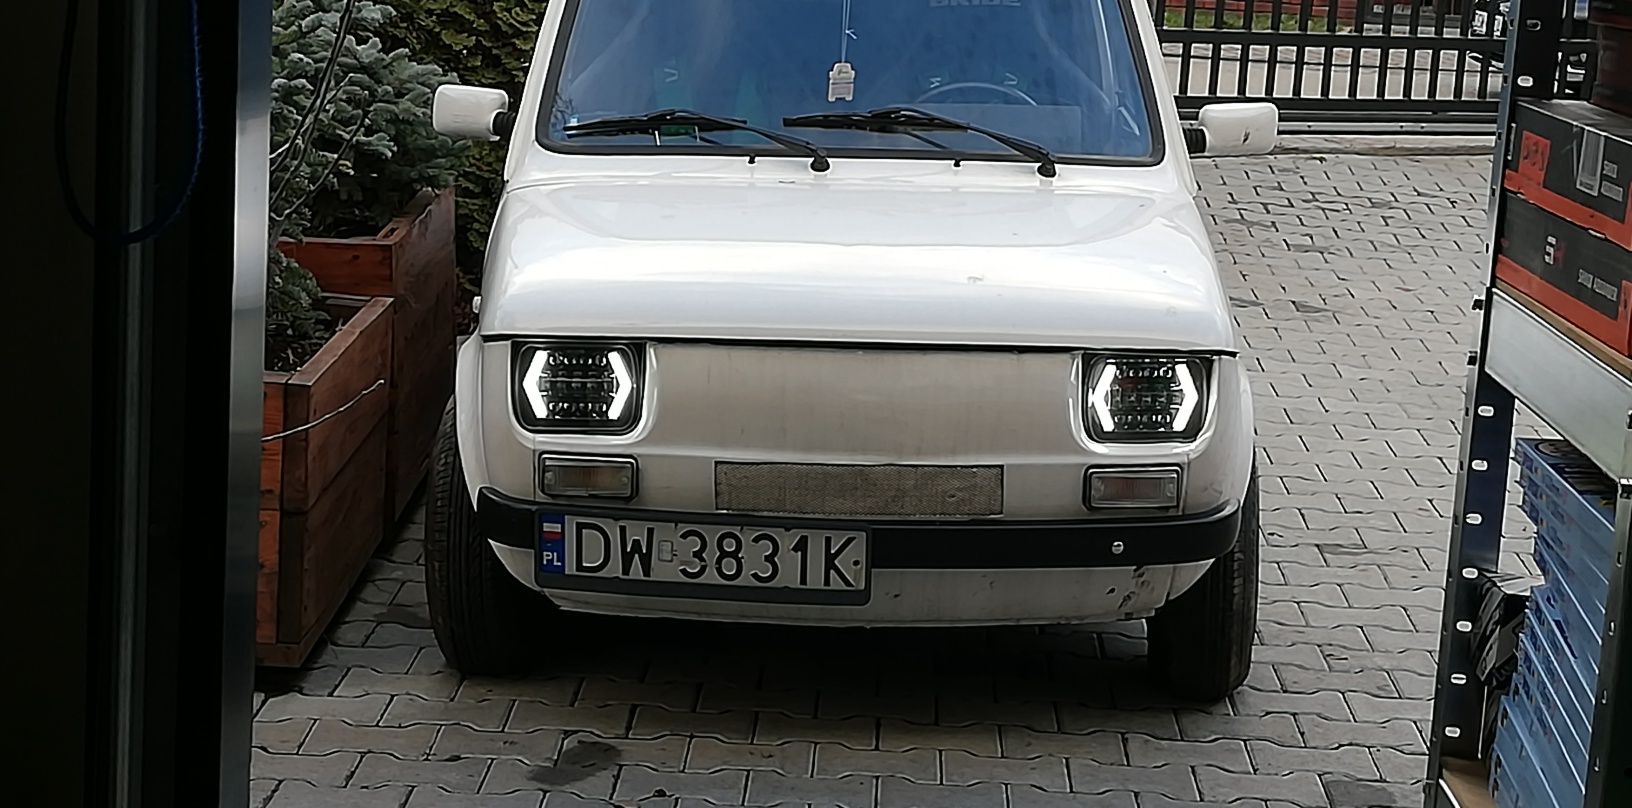 Fiat 126p lampy przednie LED nowe tylko u mnie super design